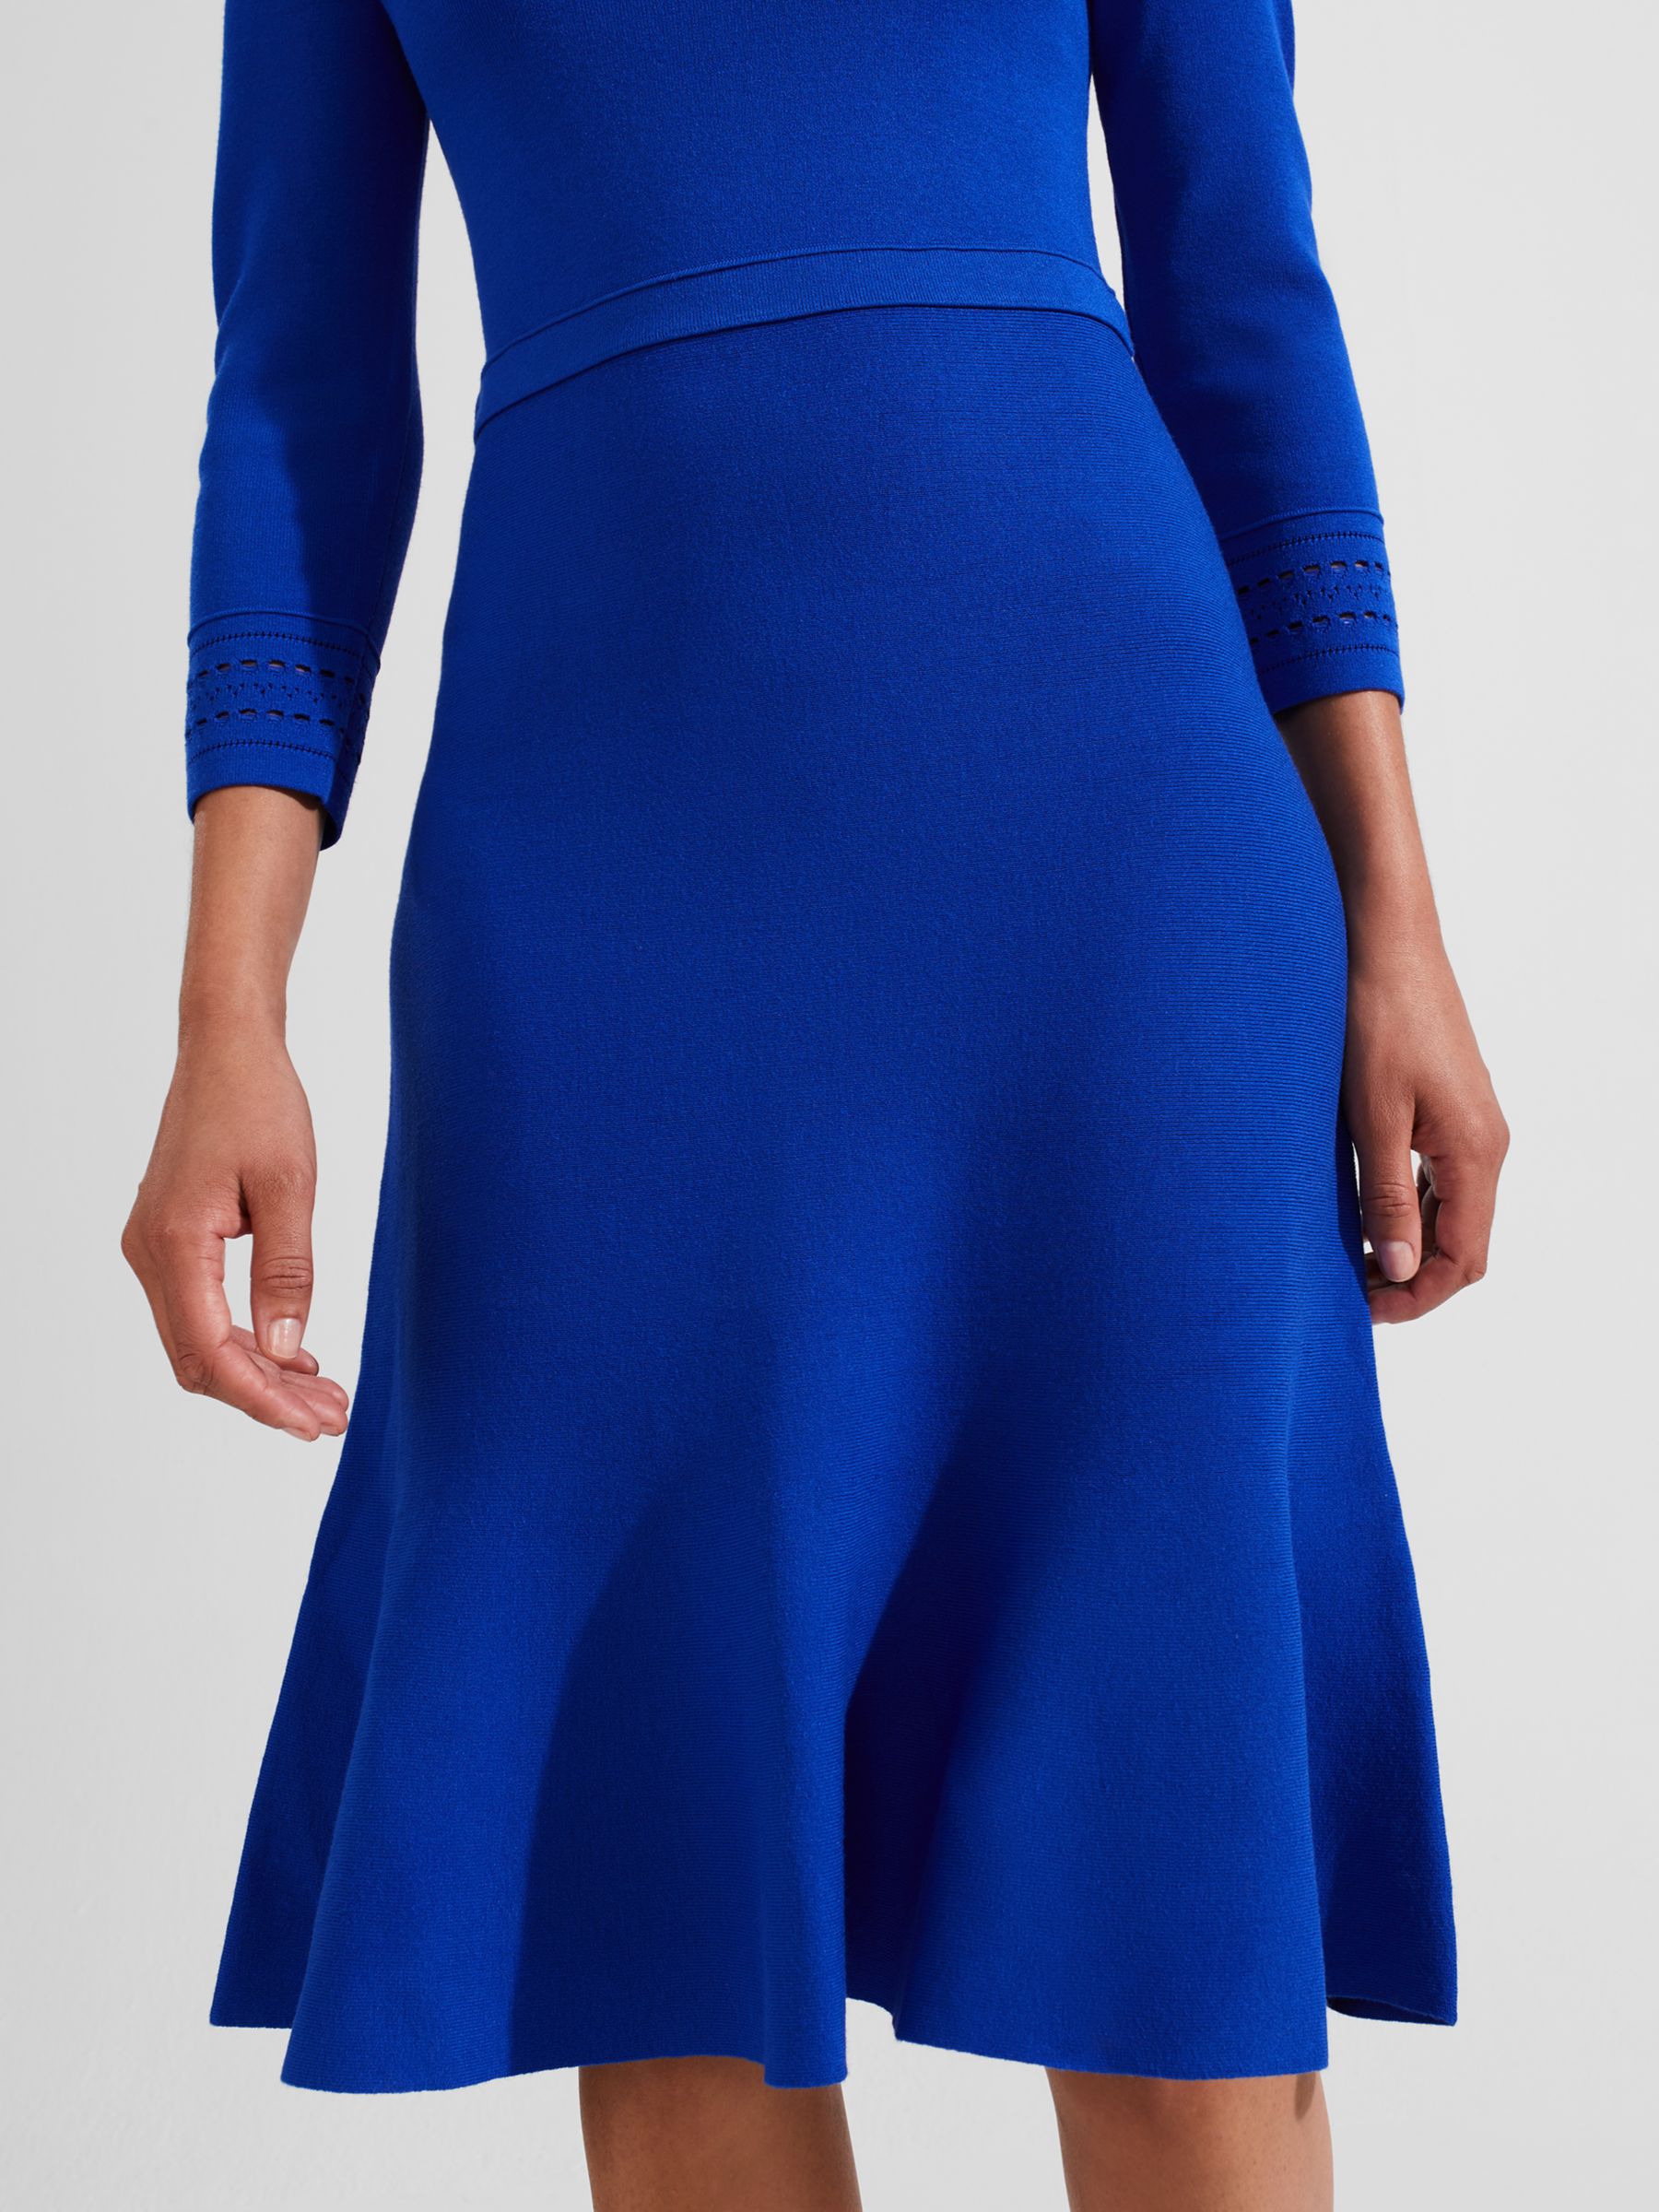 Hobbs Quinn Knitted Dress, Egyptian Blue at John Lewis & Partners